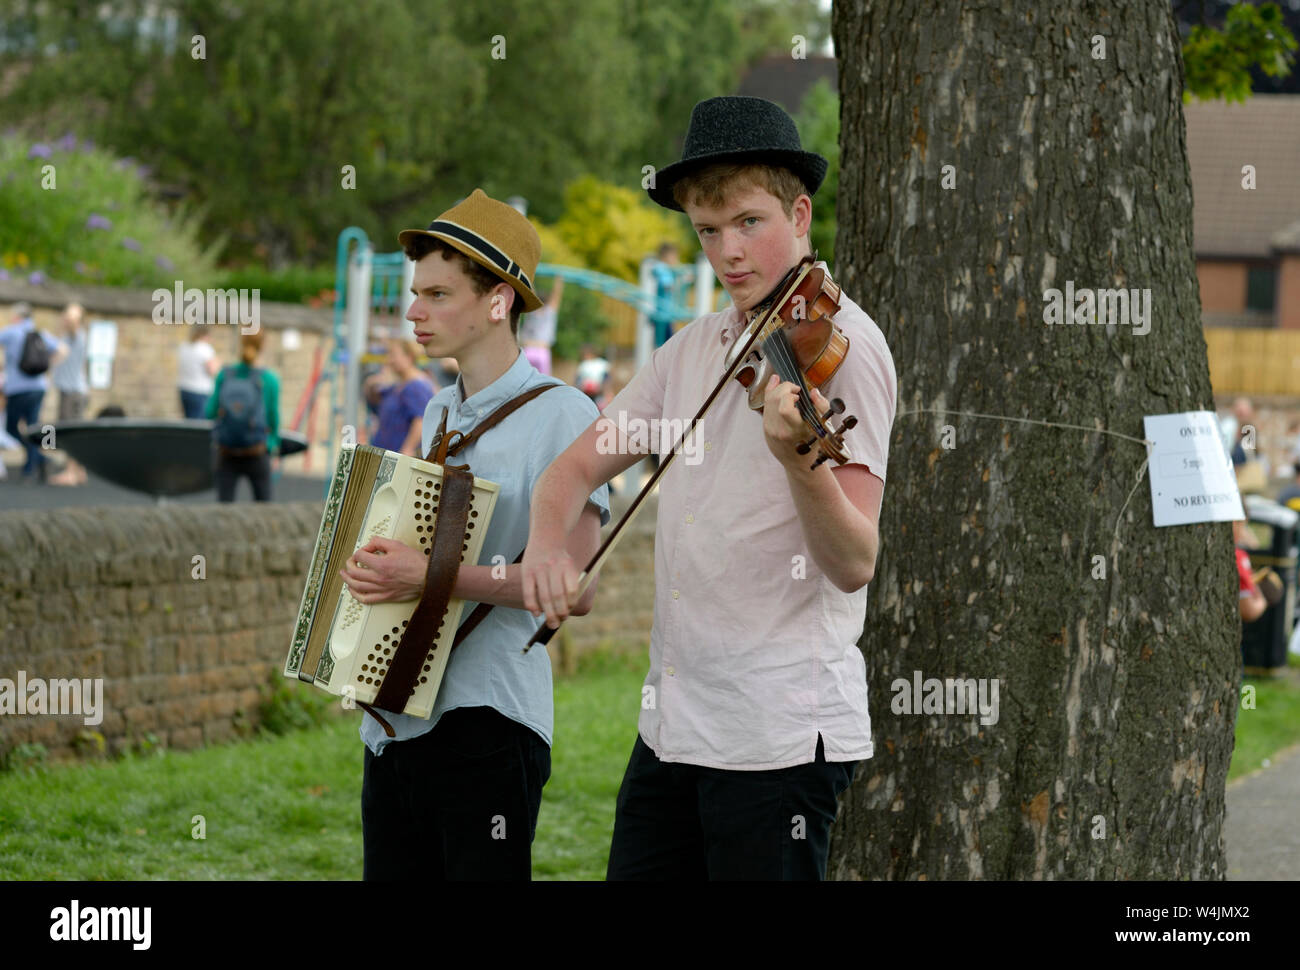 Junge Männer spielen klassische Musik an der Veranstaltung in Park Stockfoto